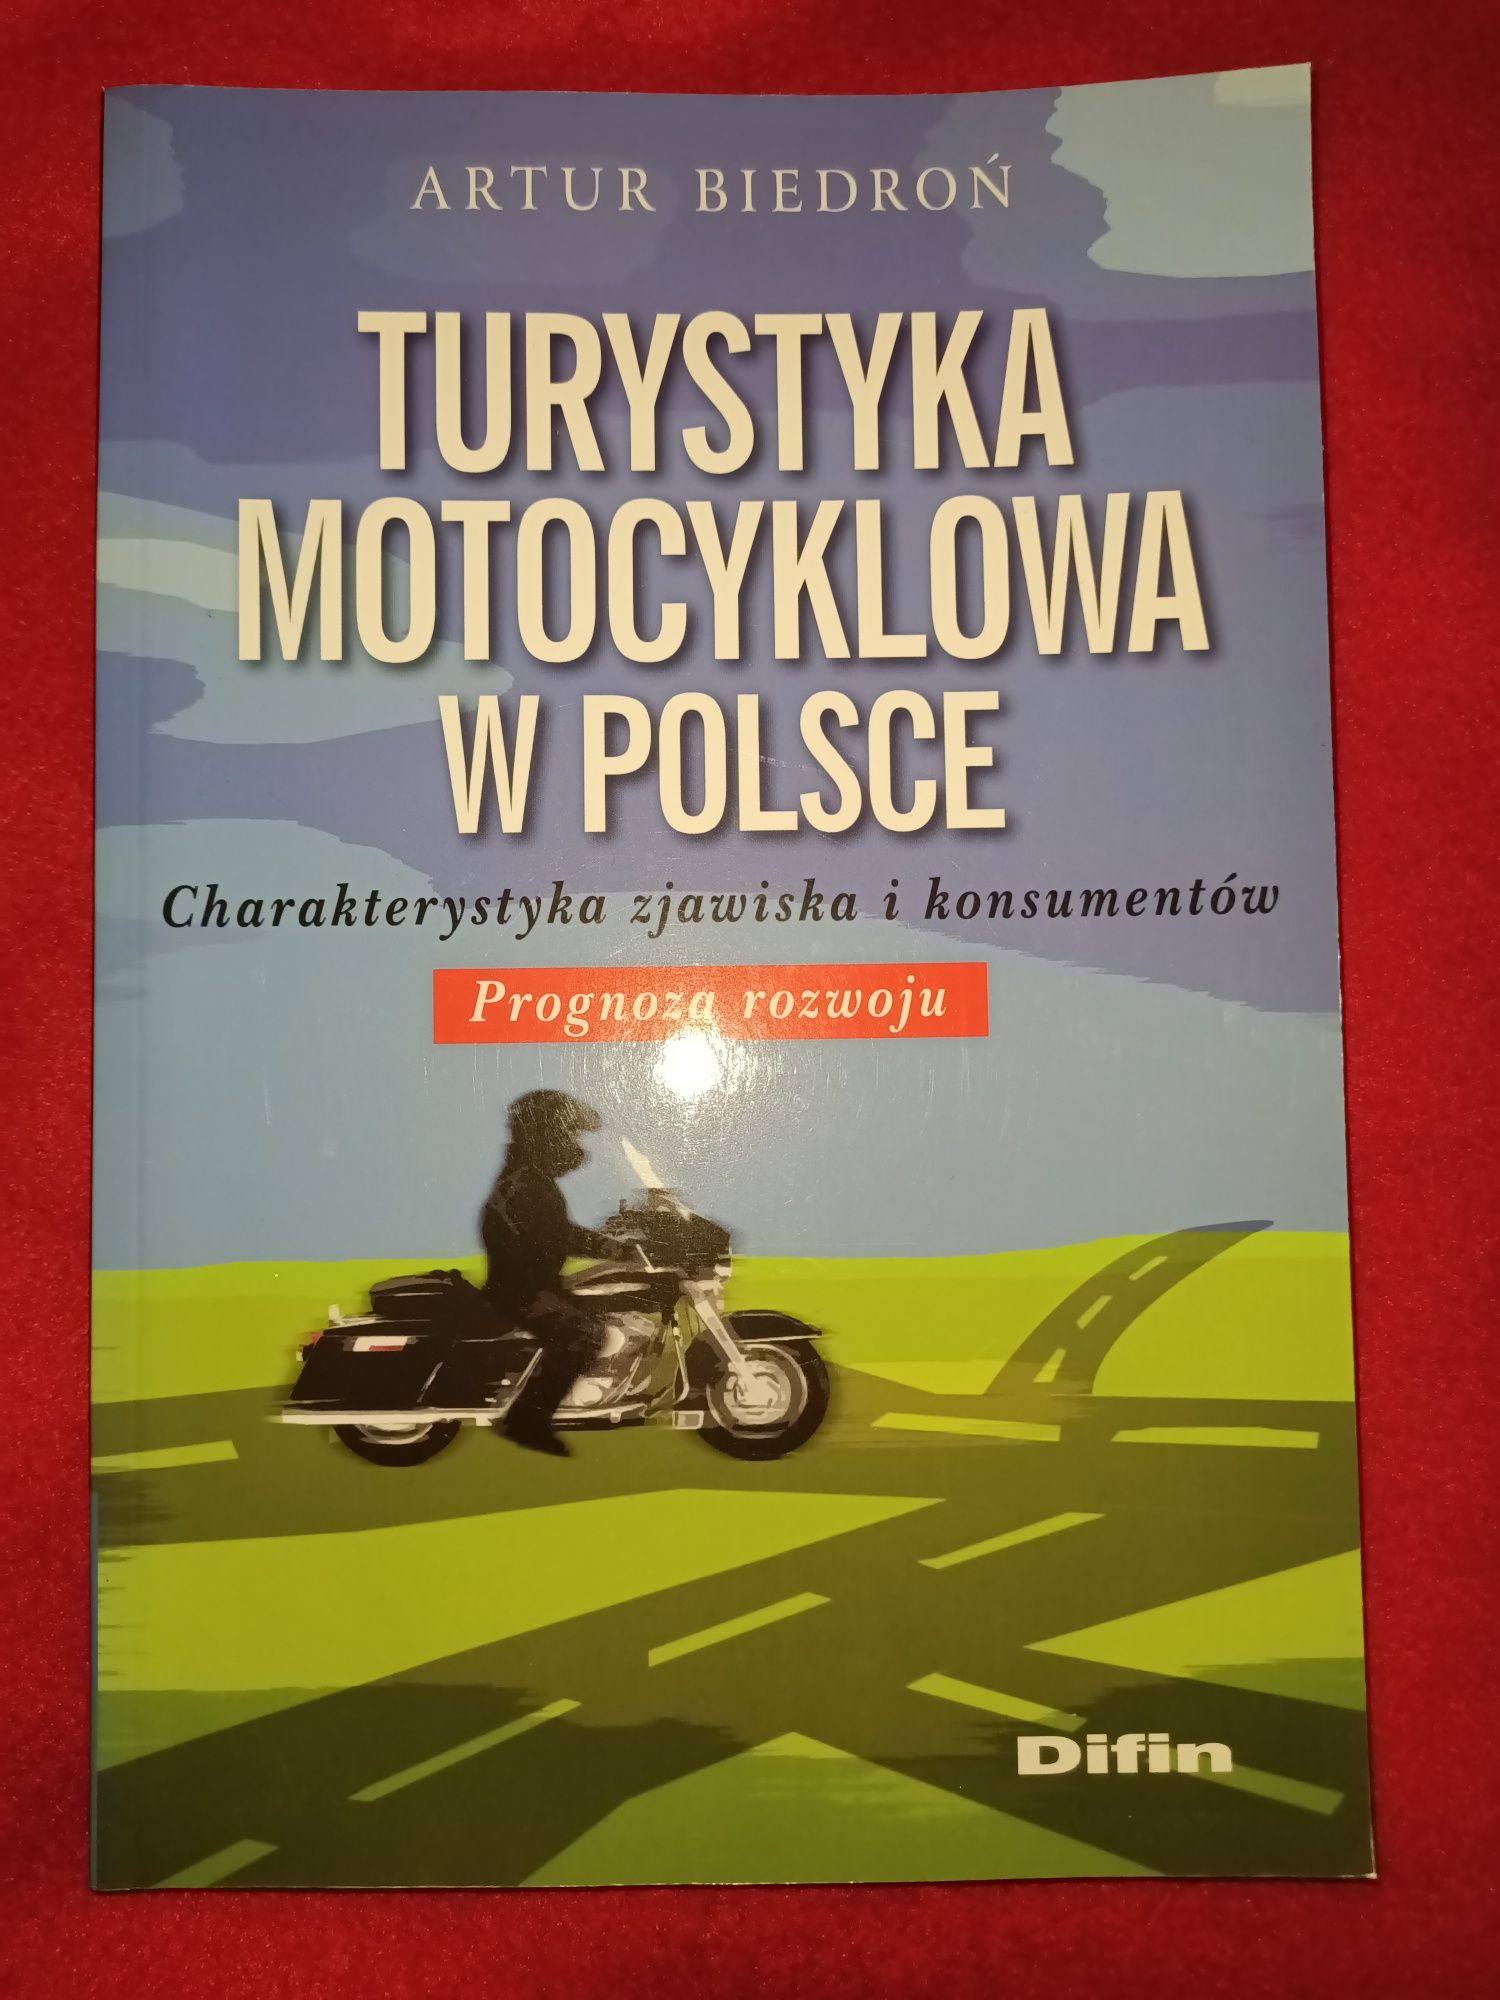 Turystyka motocyklowa w Polsce Charakterystyka prognoza Biedroń